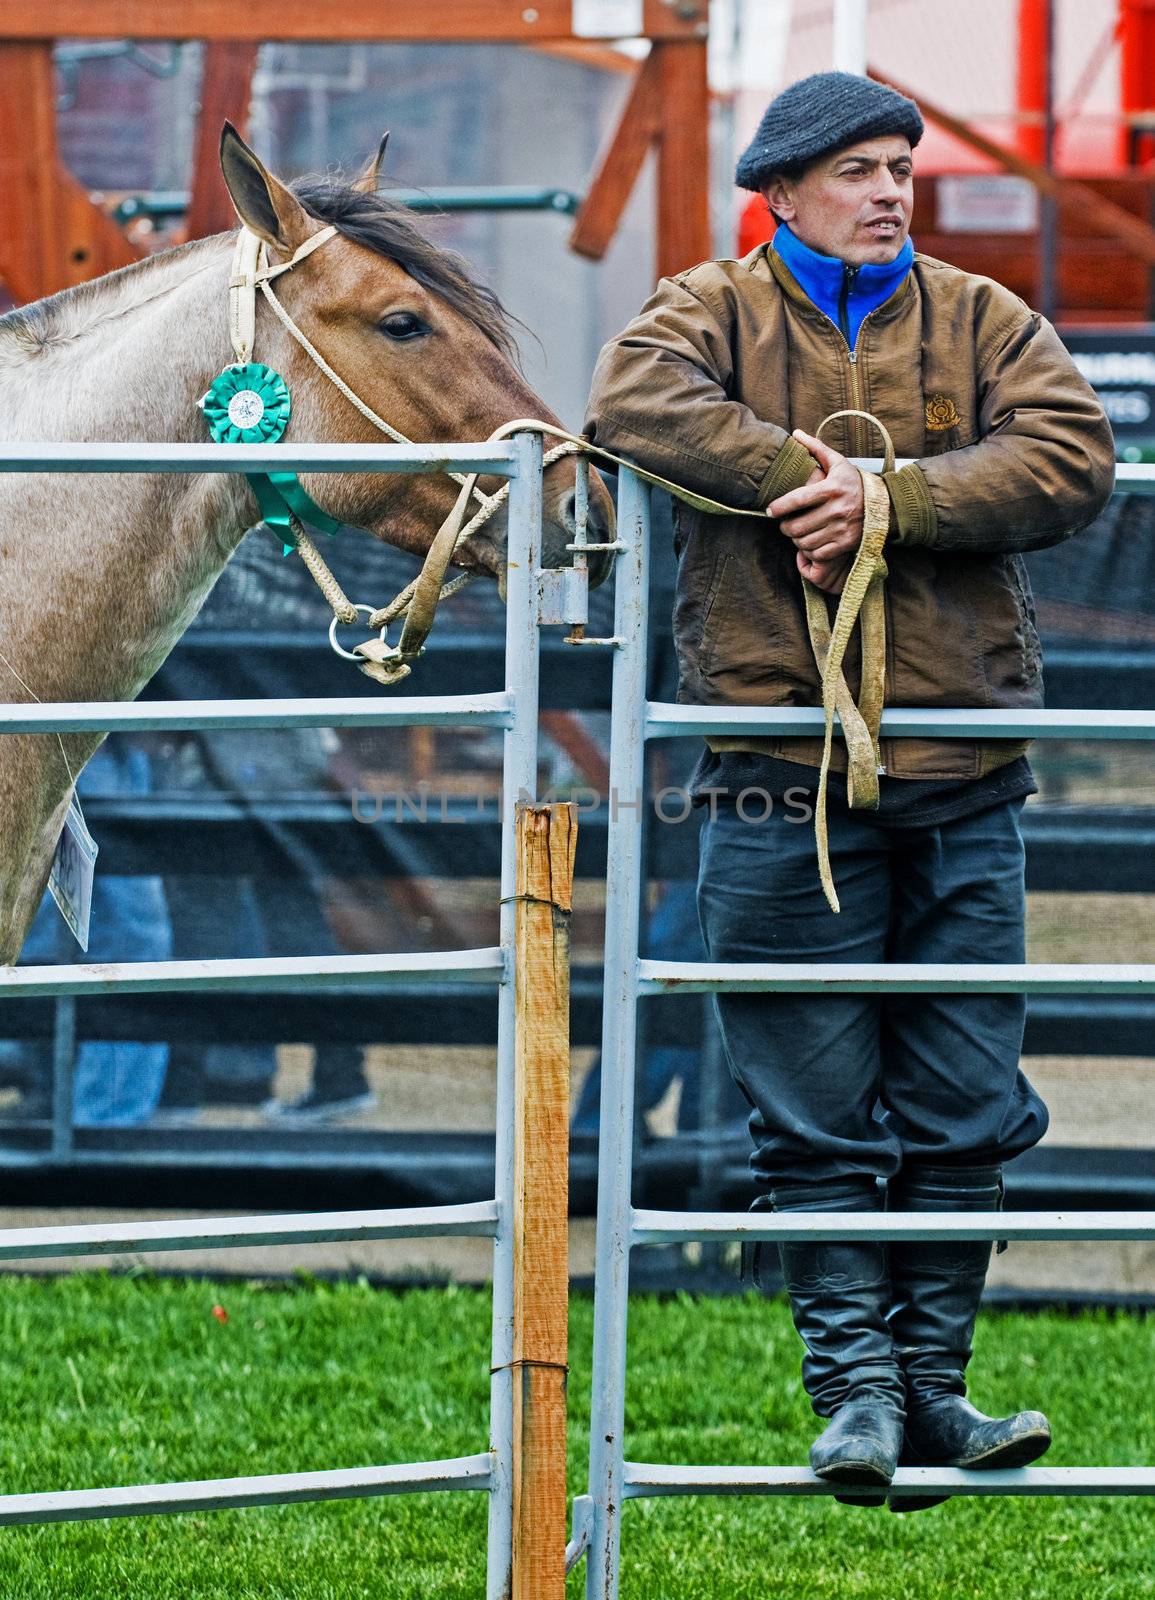 September 2008 Montevideo Uruguay - Gaucho in a horse show in "Expo Prado"